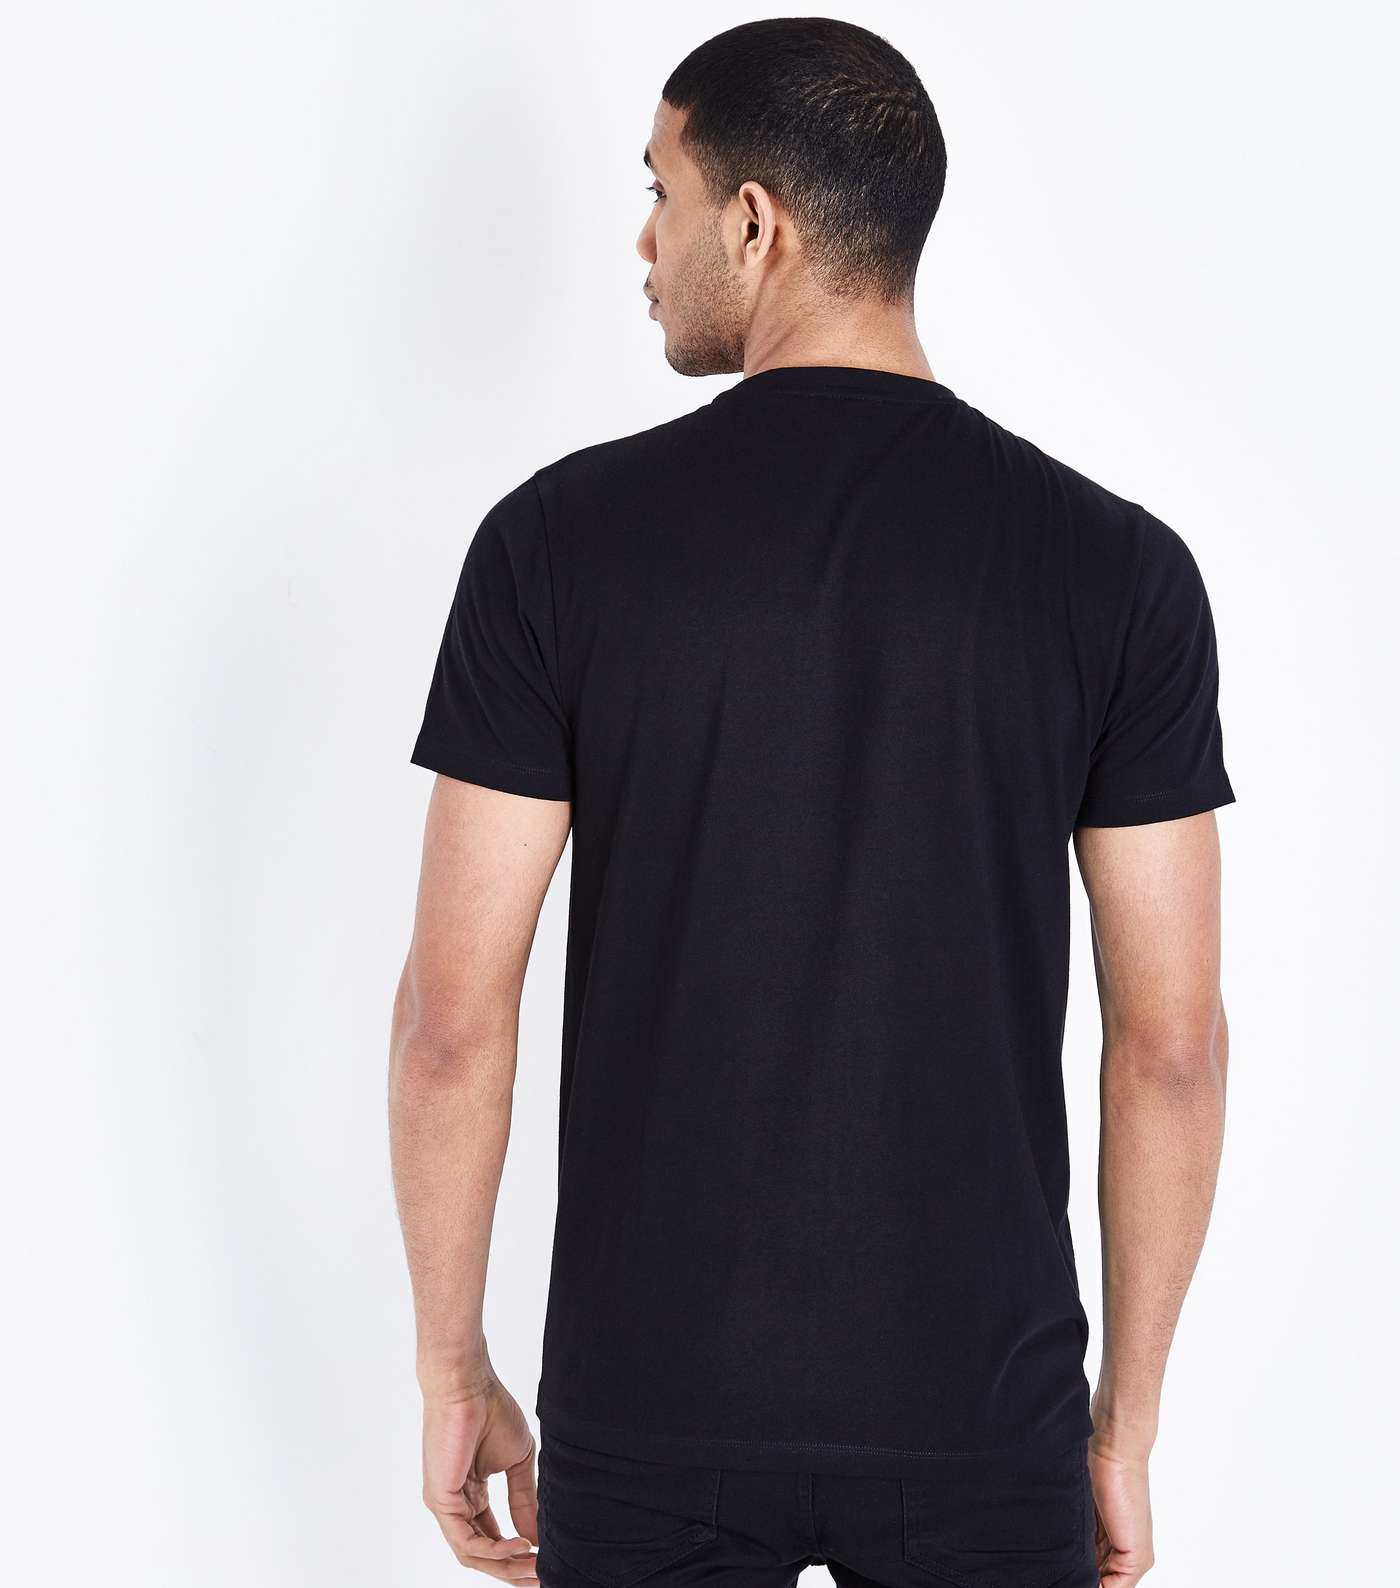 Black Miami Palm Printed T-Shirt Image 3